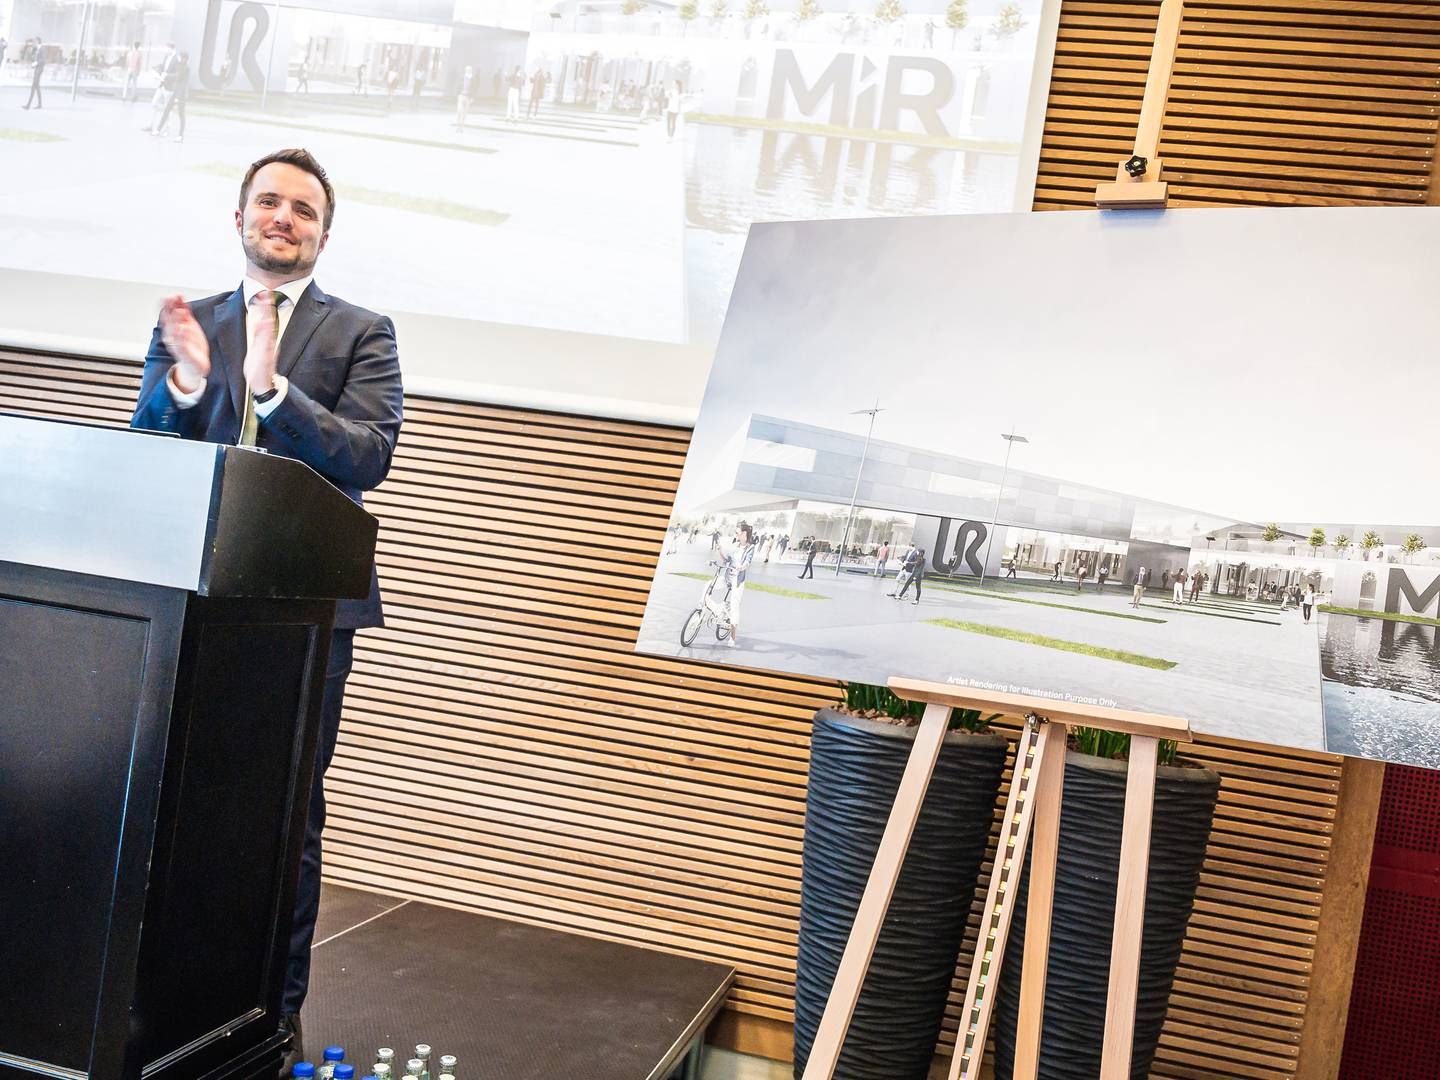 Erhvervsminister Simon Kollerup (S) løftede sløret for MIR og UR's nye hovedsæde, der også i fremtiden vil være i Odense. | Foto: UR/MIR